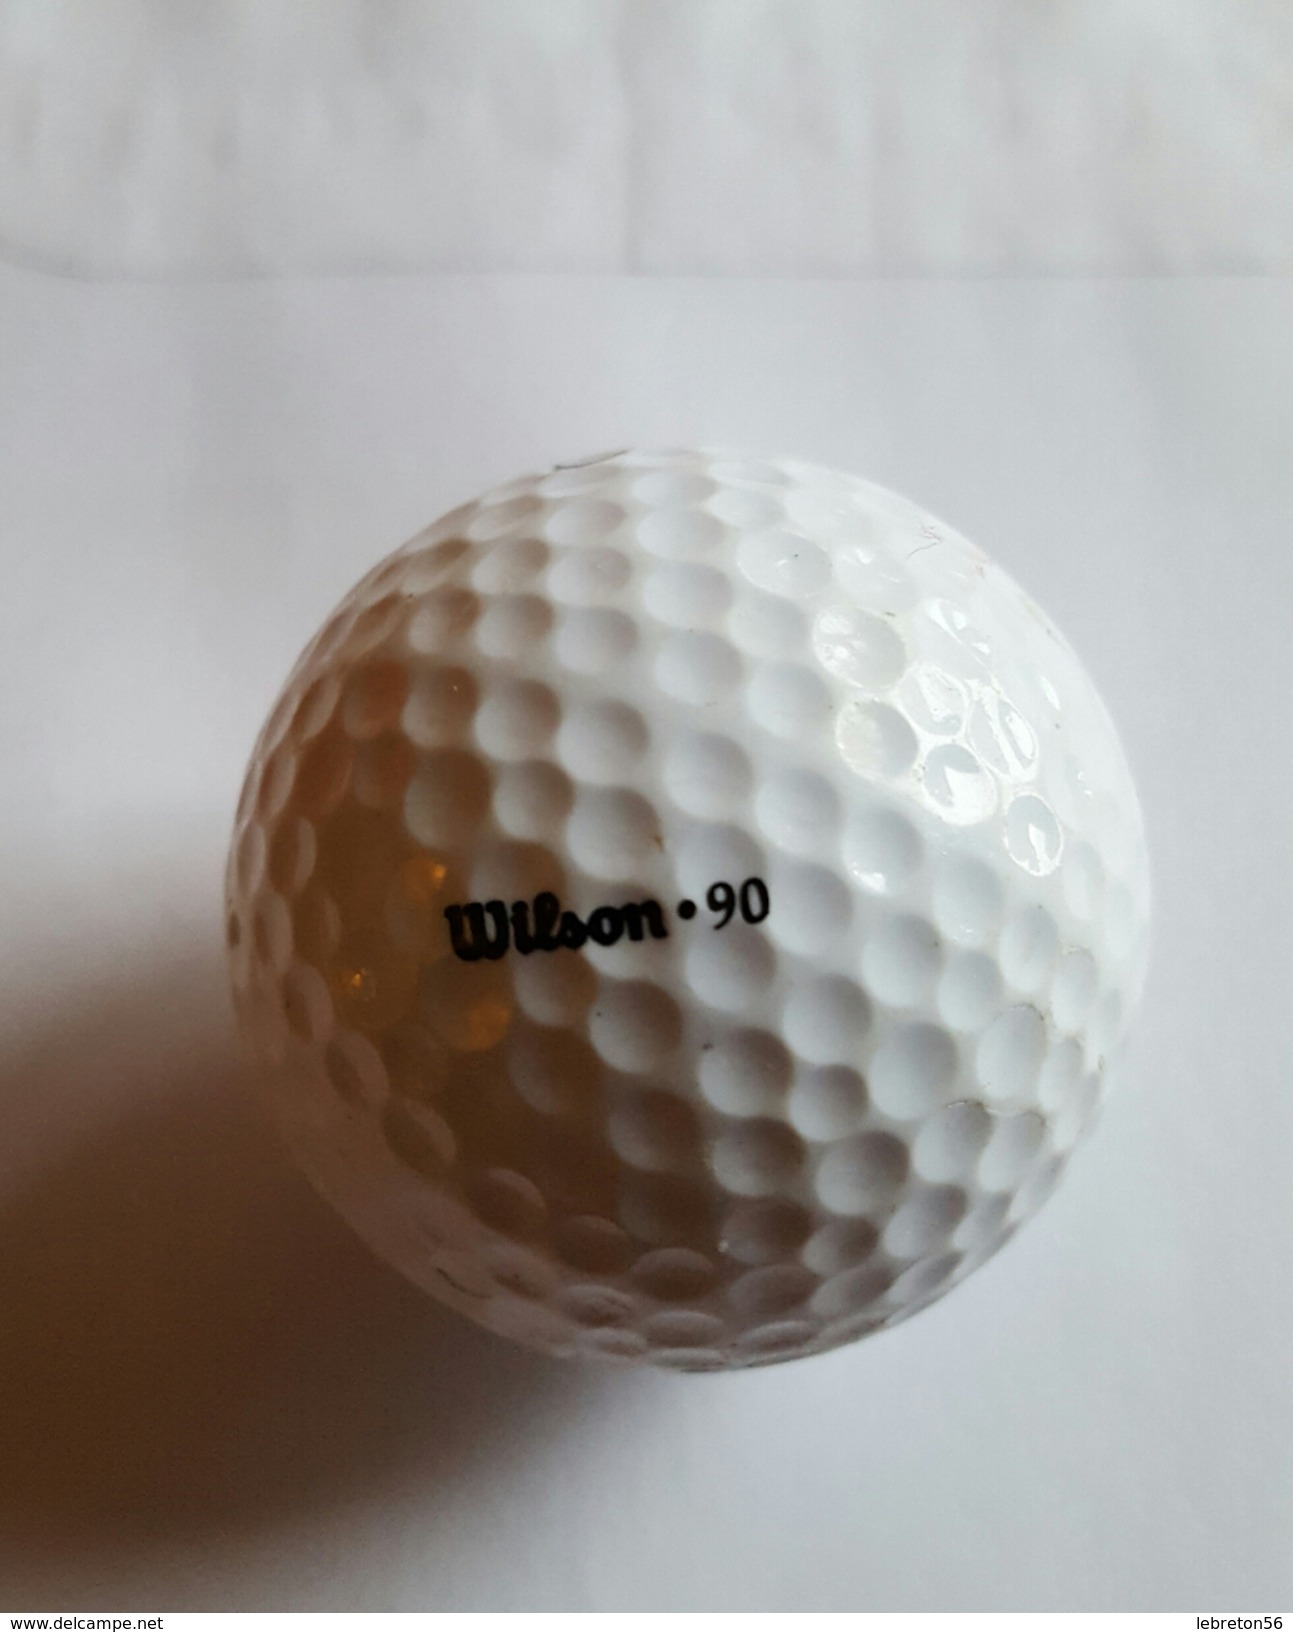 Joli 1 Balle De Golf Collection ULTRA 3 Wilson.90 - Uniformes Recordatorios & Misc